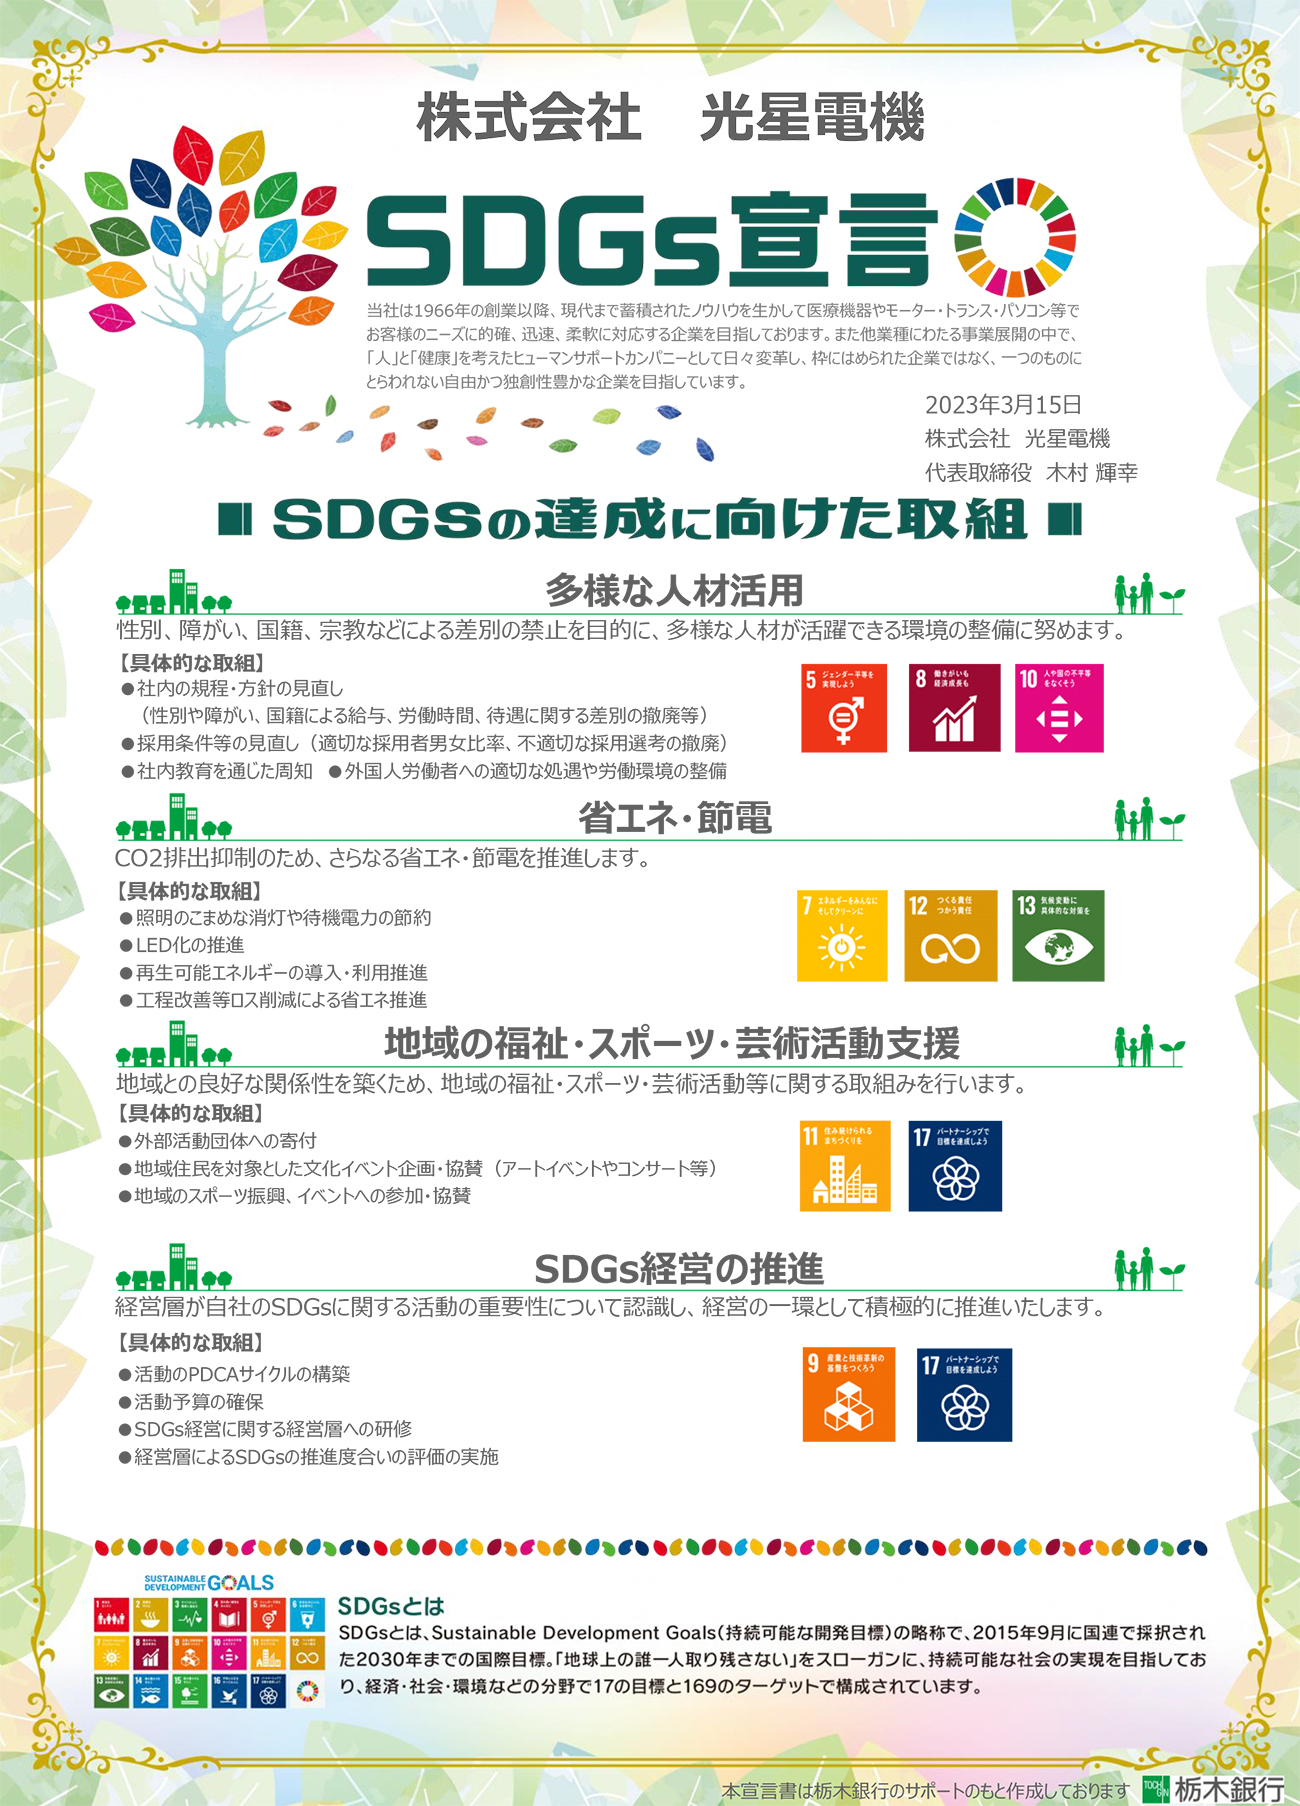 栃木銀行「SDGs宣言」